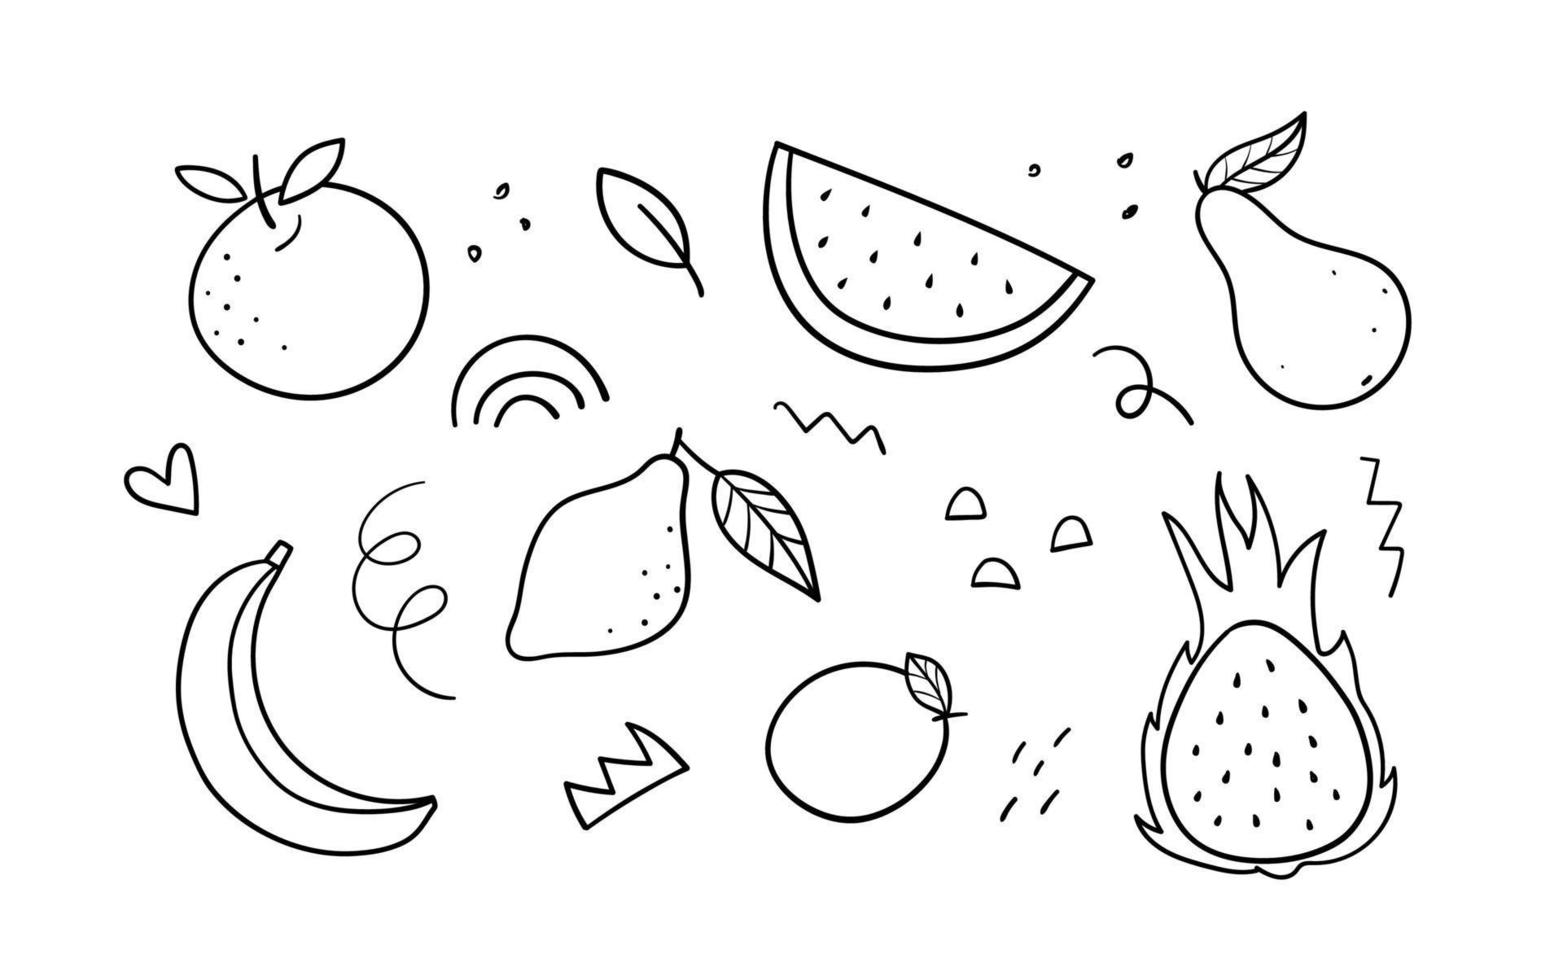 sertie de fruits abstraits dessinés à la main, d'éléments et de griffonnages. illustration linéaire vectorielle. vecteur